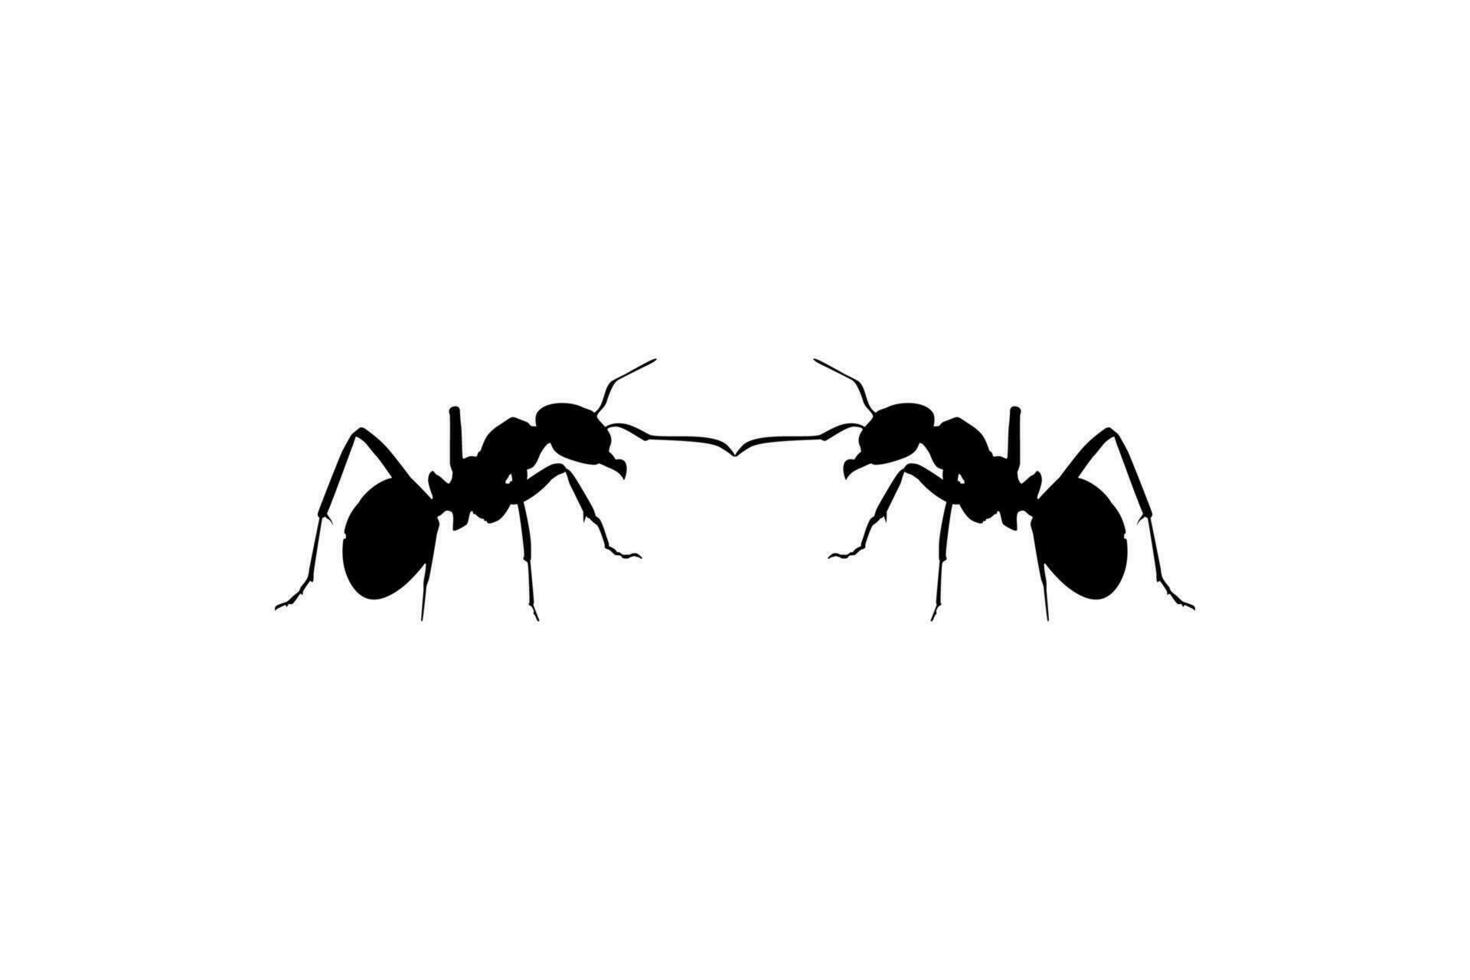 par de el hormiga silueta para Arte ilustración, logo, pictograma, sitio web, o gráfico diseño elemento. vector ilustración